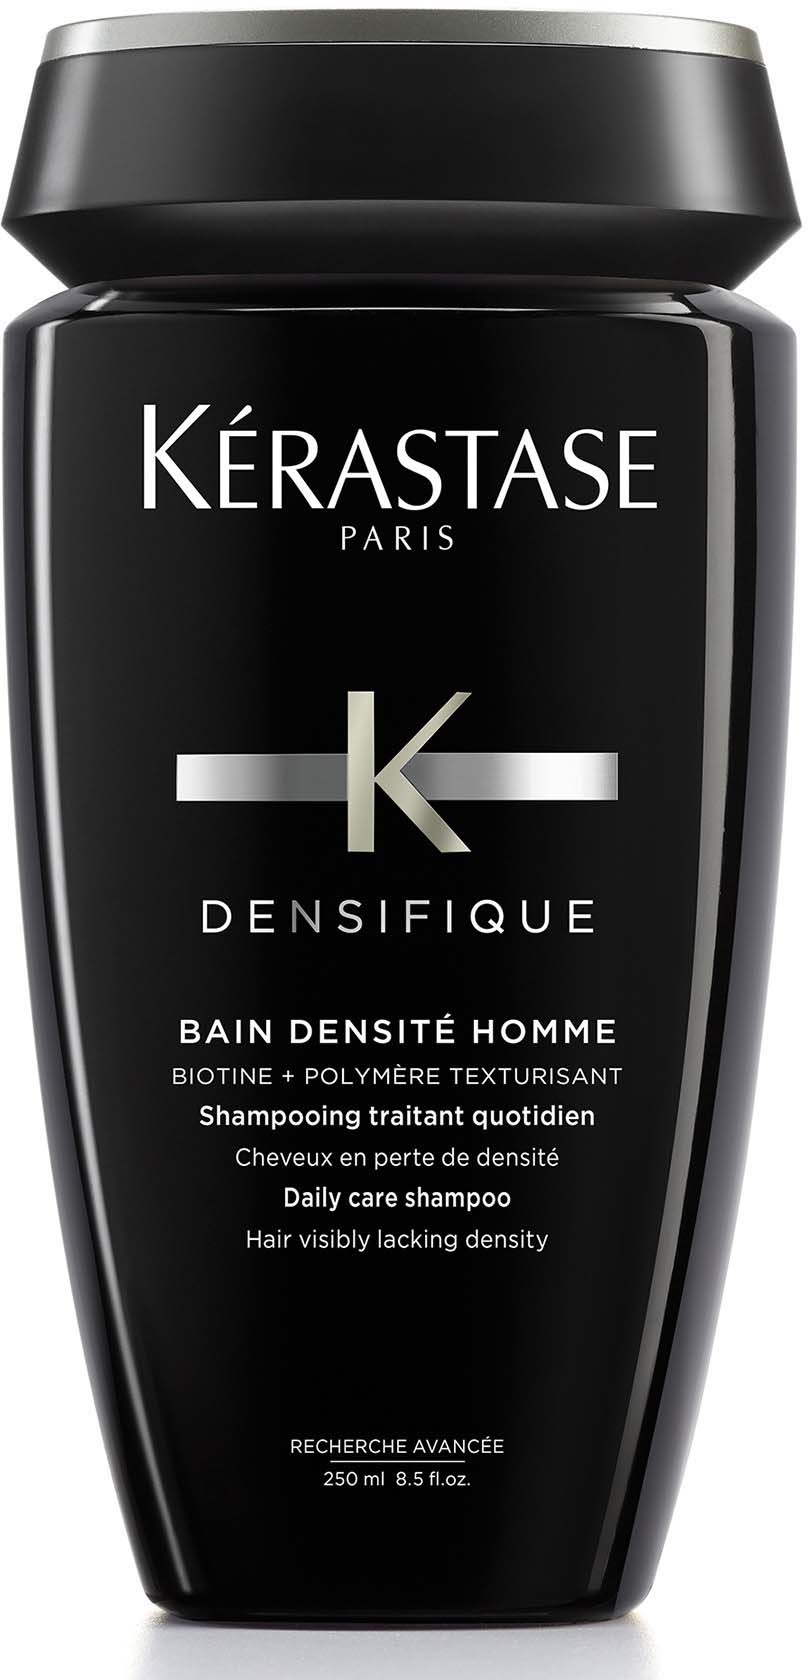 Botanik inaktive Bred rækkevidde Kérastase Densifique Bain Densité Homme shampoo 250 ml | lyko.com